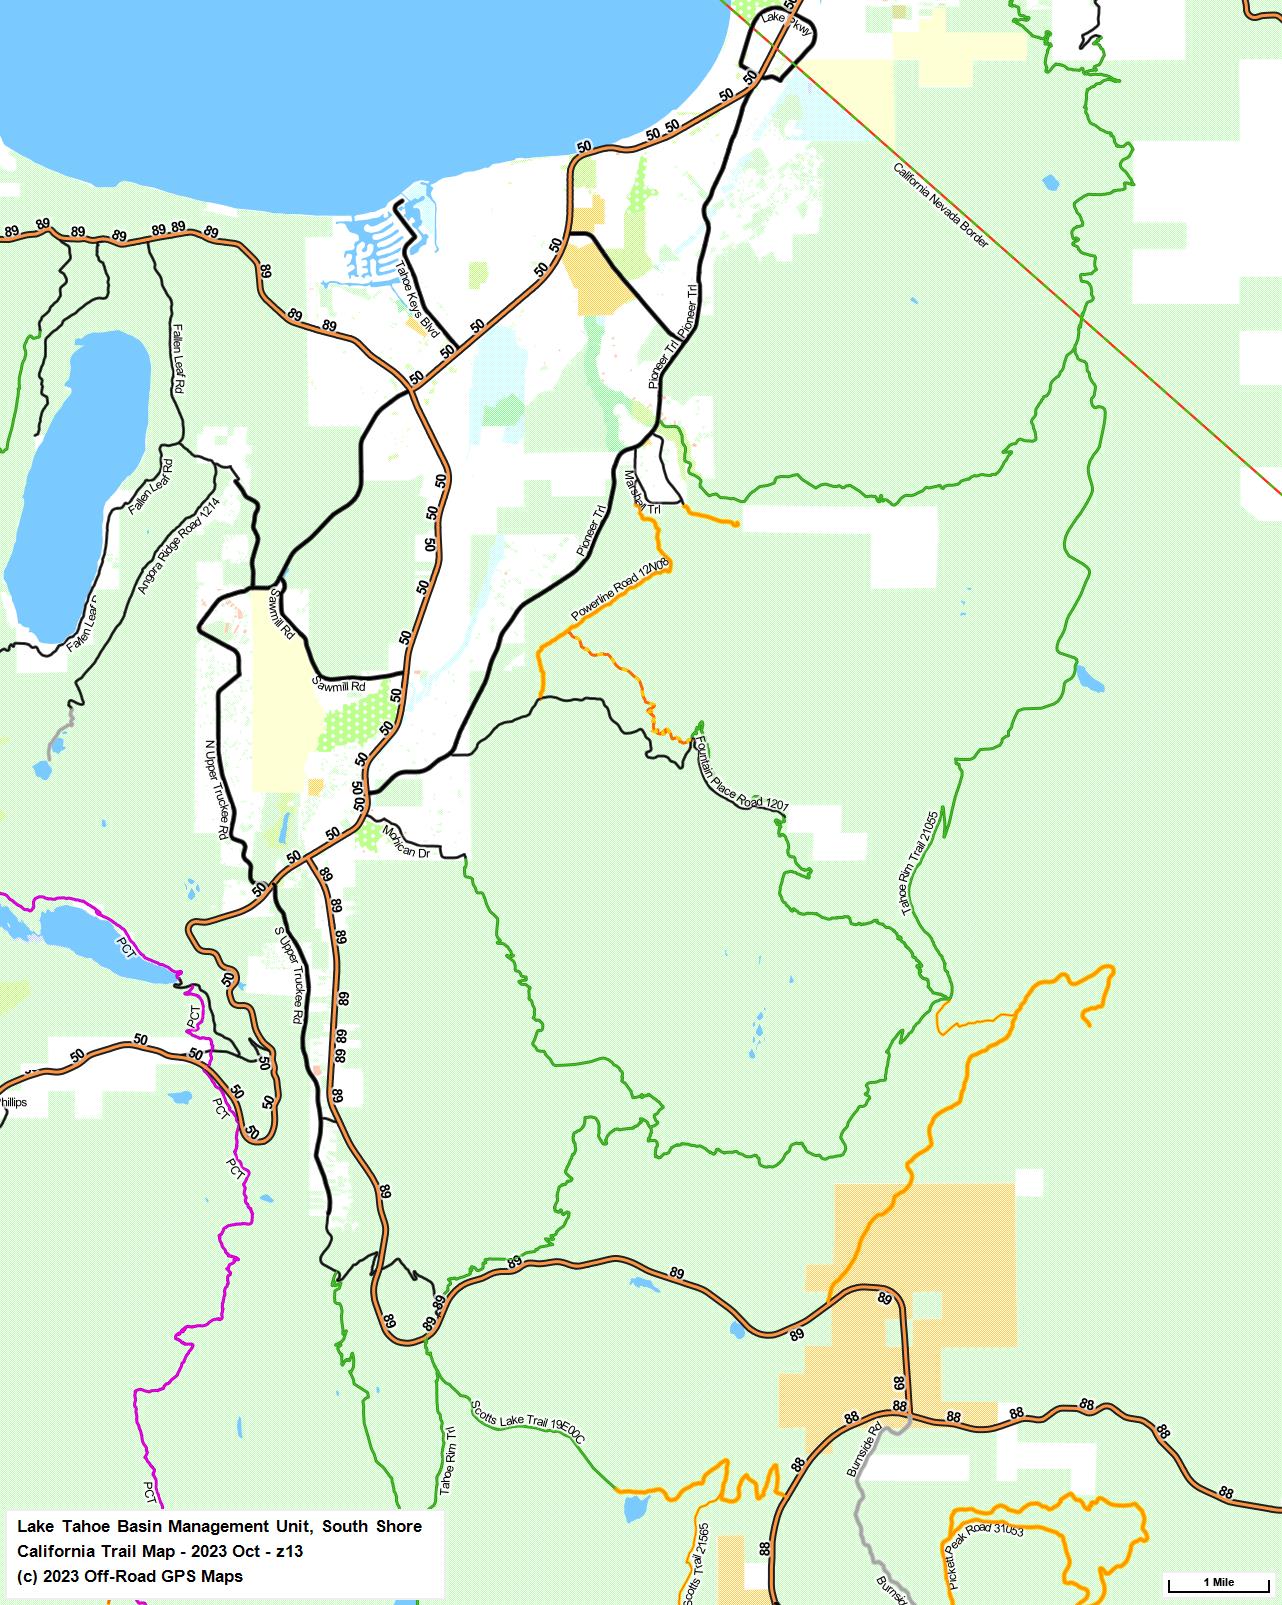 Lake Tahoe Basin Management Unit, South Shore z 13